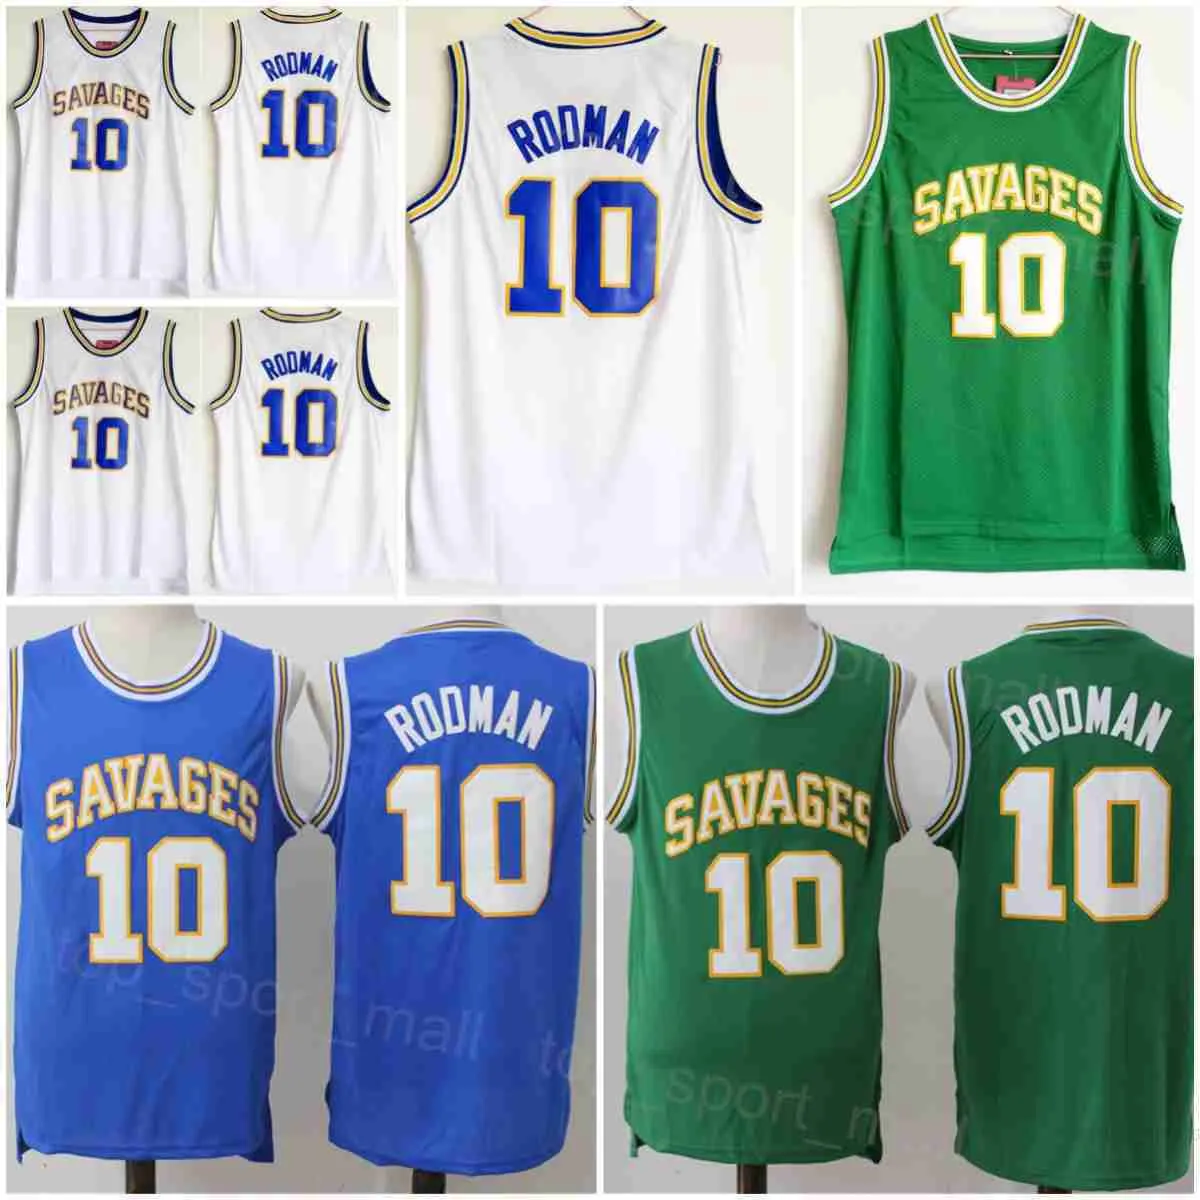 Oklahoma Savages Basketball Dennis Rodman Jerseys 10 Equipe da Universidade da Escola da High School Verde Branco Branco All costurado para fãs de esportes camisa respirável NCAA